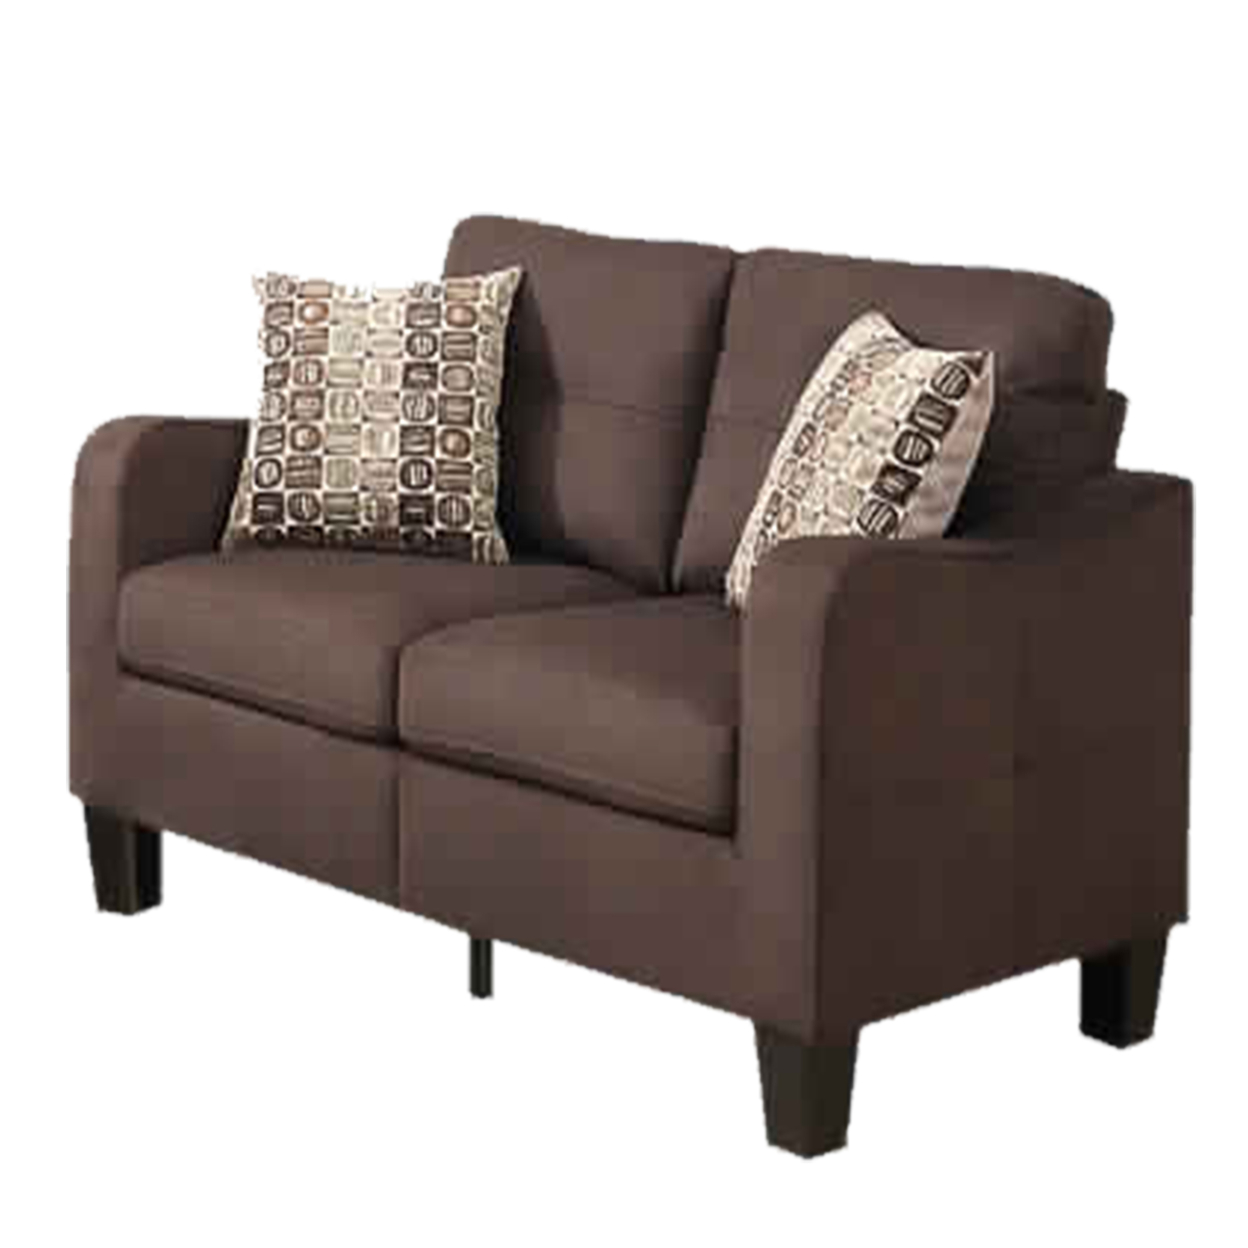 Polyfiber 2 Pieces Sofa Set With Accent Pillows Brown- Saltoro Sherpi